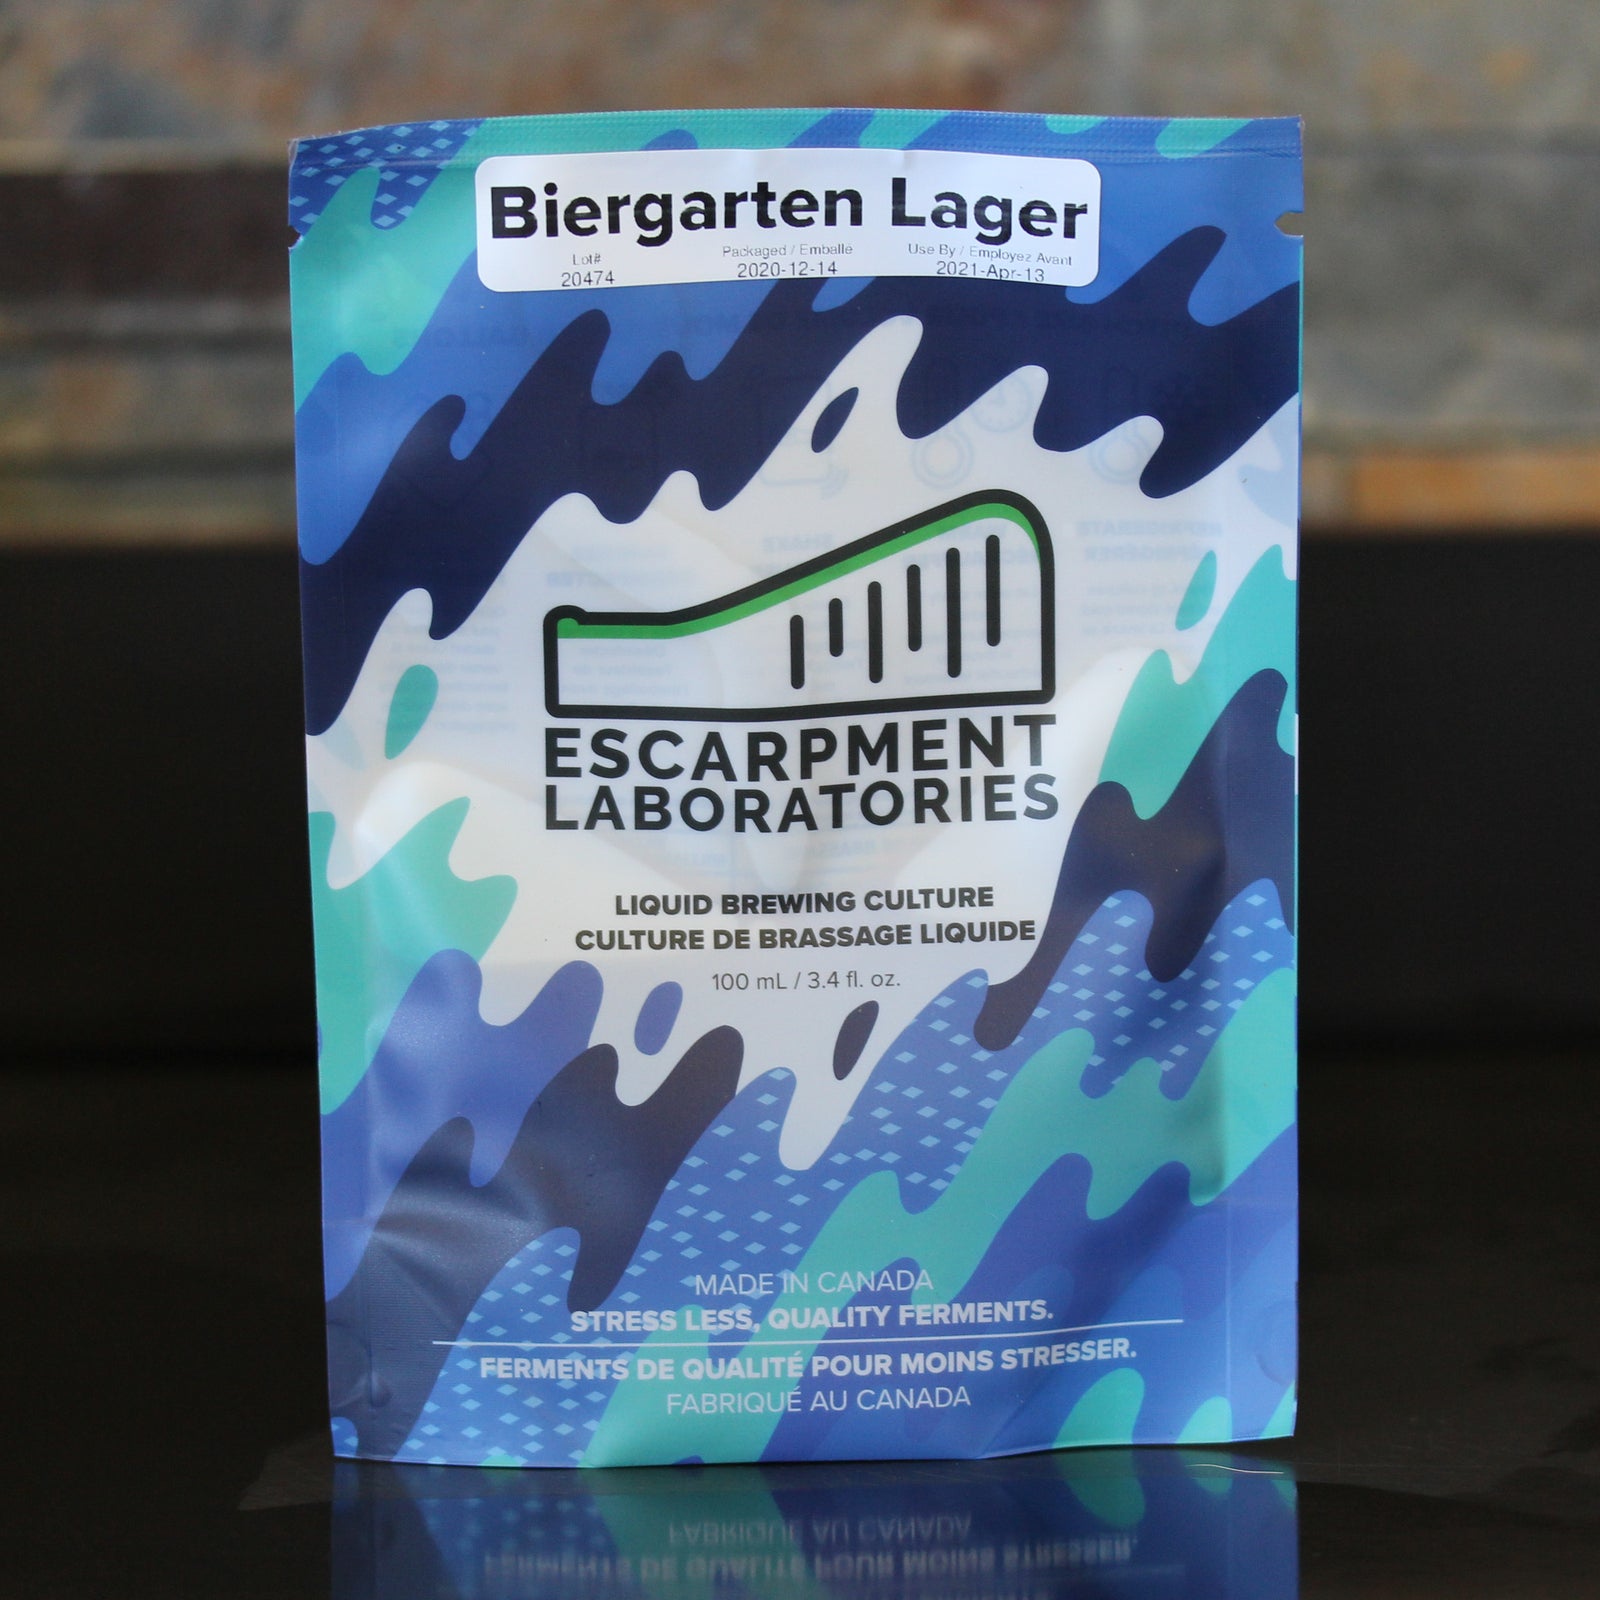 Biergarten Lager - Escarpment Labs